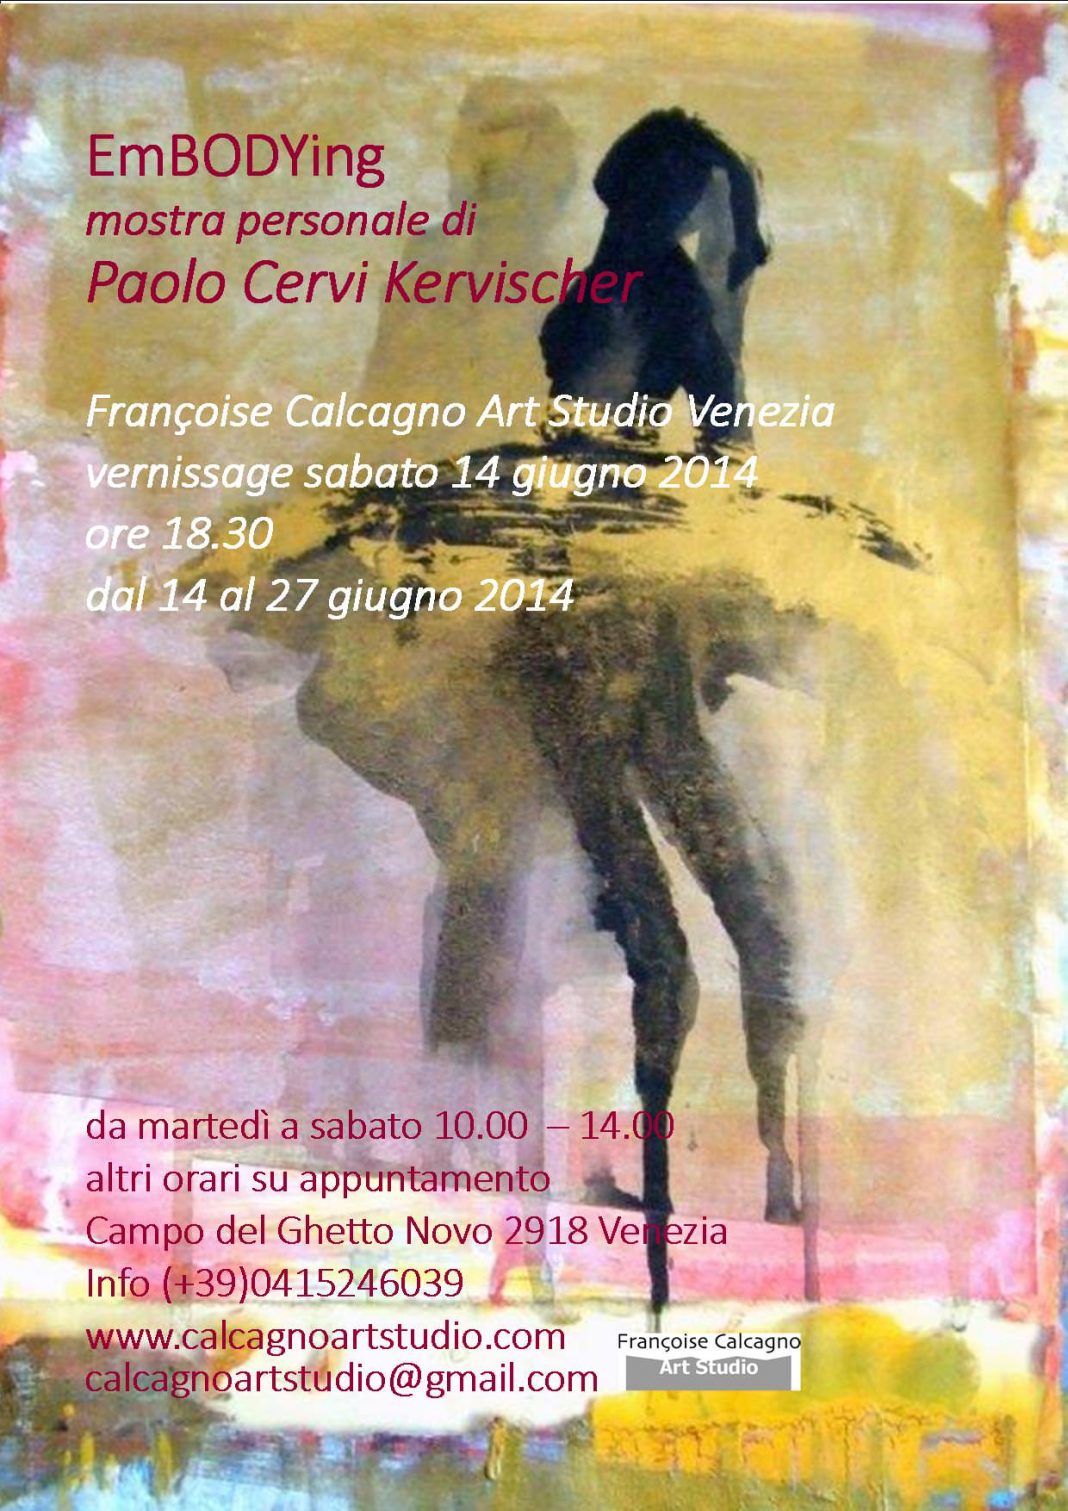 Paolo Cervi Kervischer – EmBODYinghttps://www.exibart.com/repository/media/eventi/2014/06/paolo-cervi-kervischer-8211-embodying-1068x1511.jpg